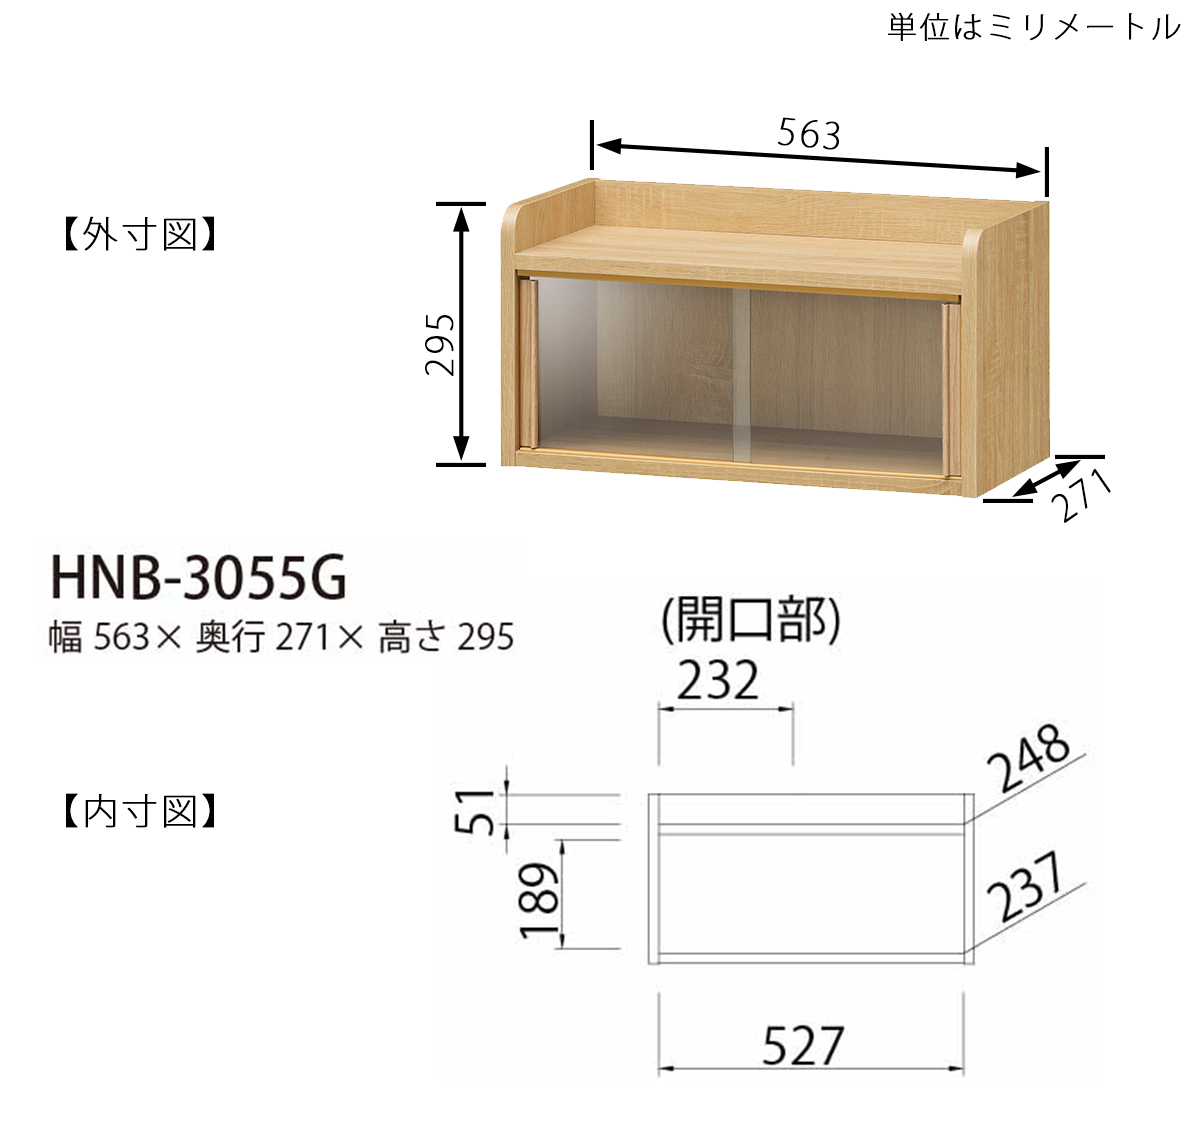 ミニ食器棚 卓上棚 ホノボーラ HNB-3055G キッチン収納白井産業 組み立て家具 | 家具インテリアの仕入れ・卸・ドロップシッピング  SHIRAI Business Online